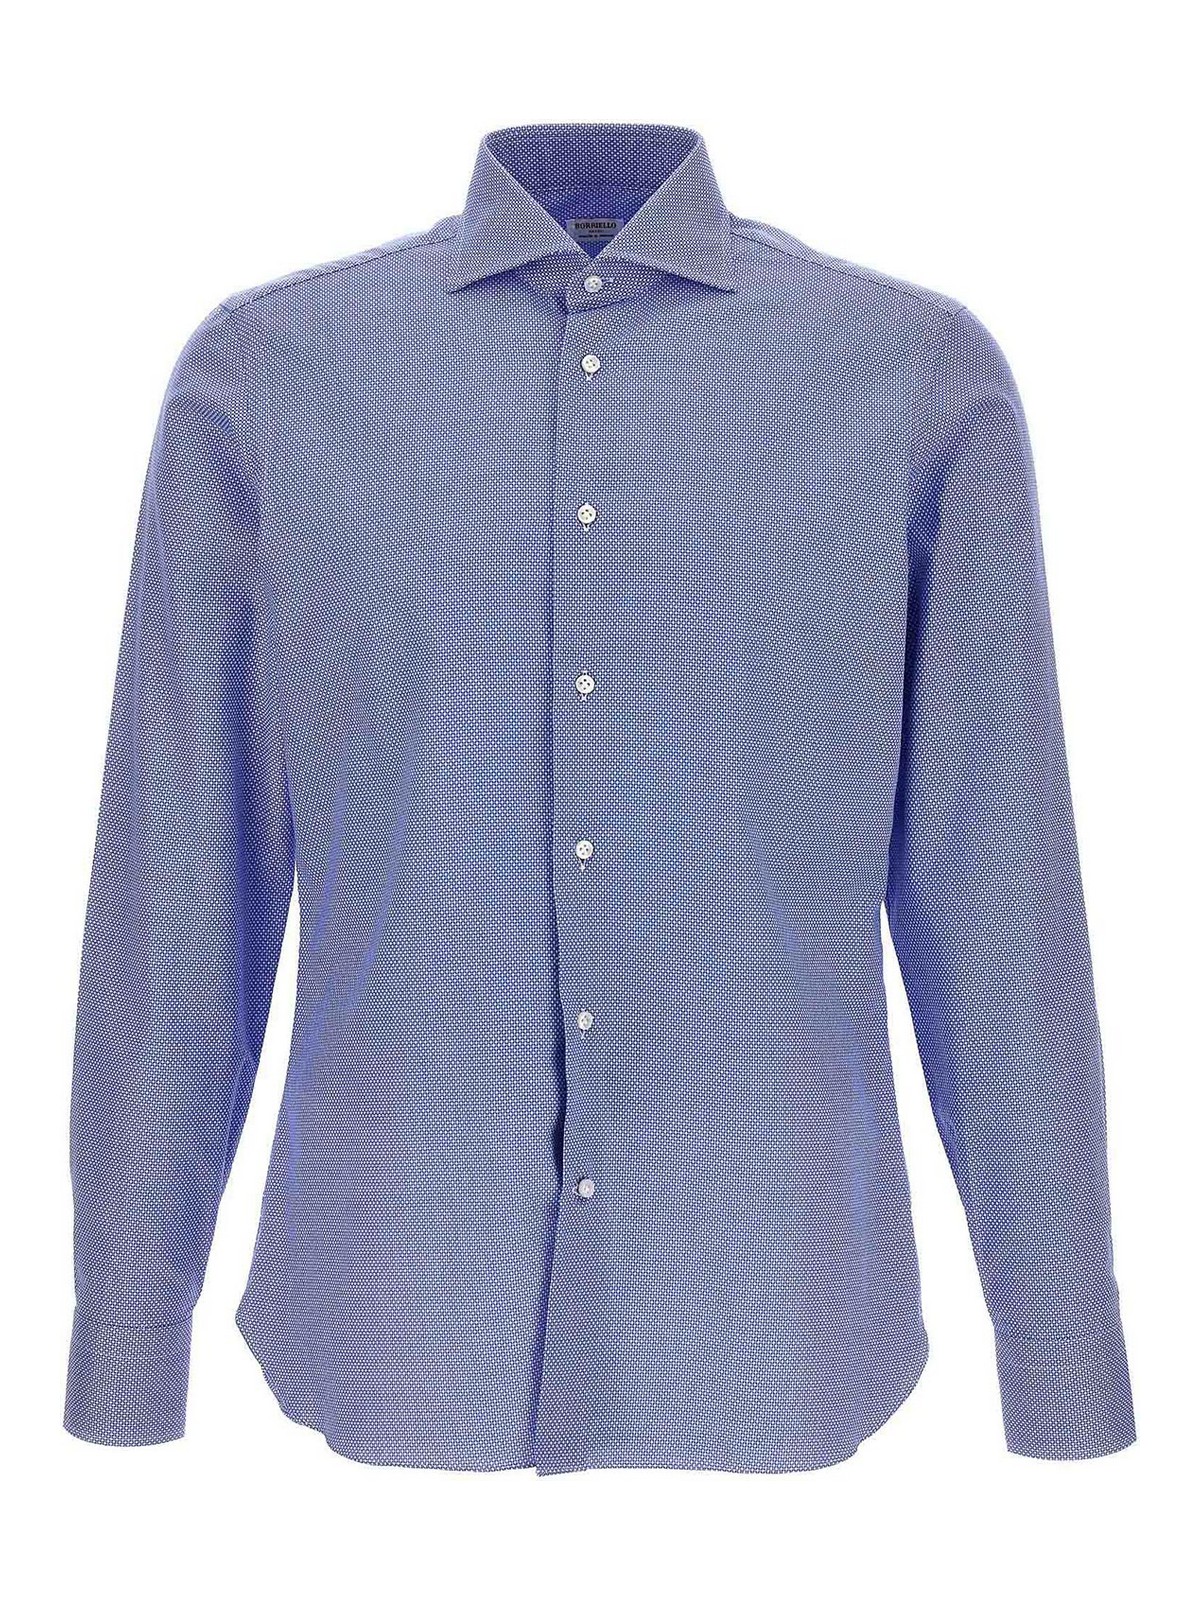 Borriello Napoli Micro Operated Shirt In Light Blue